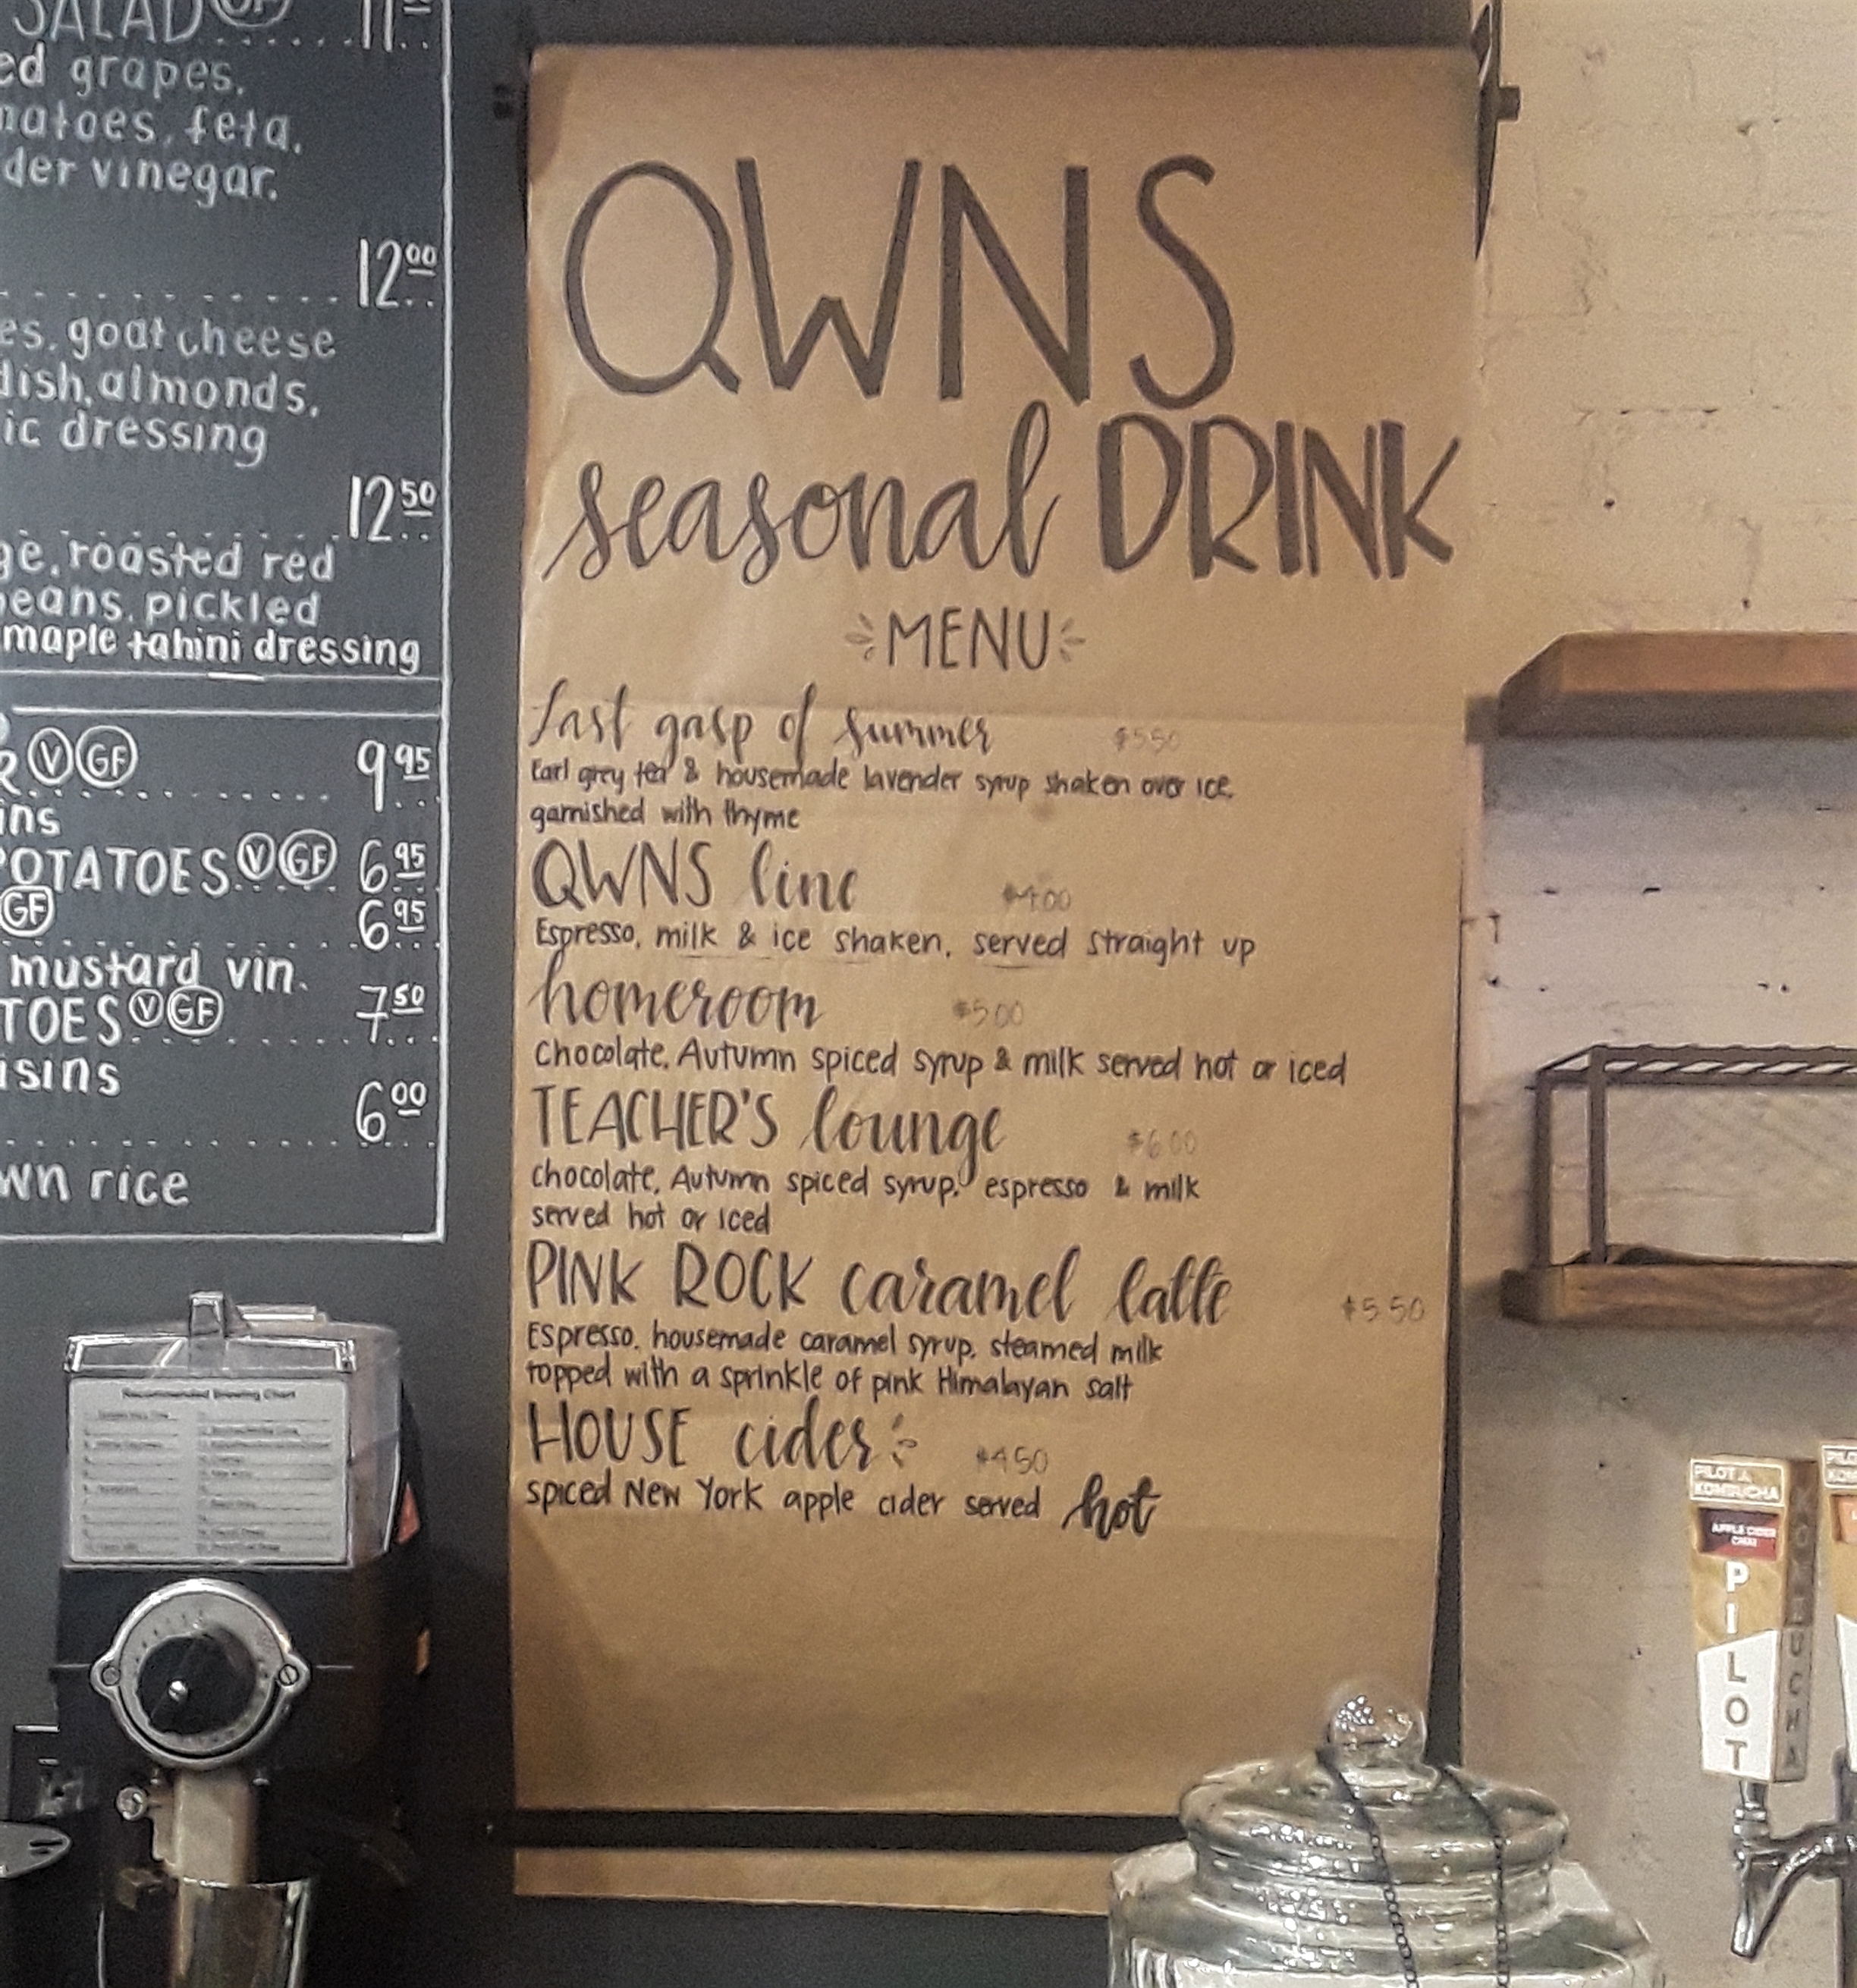 QWNS fall drink menu